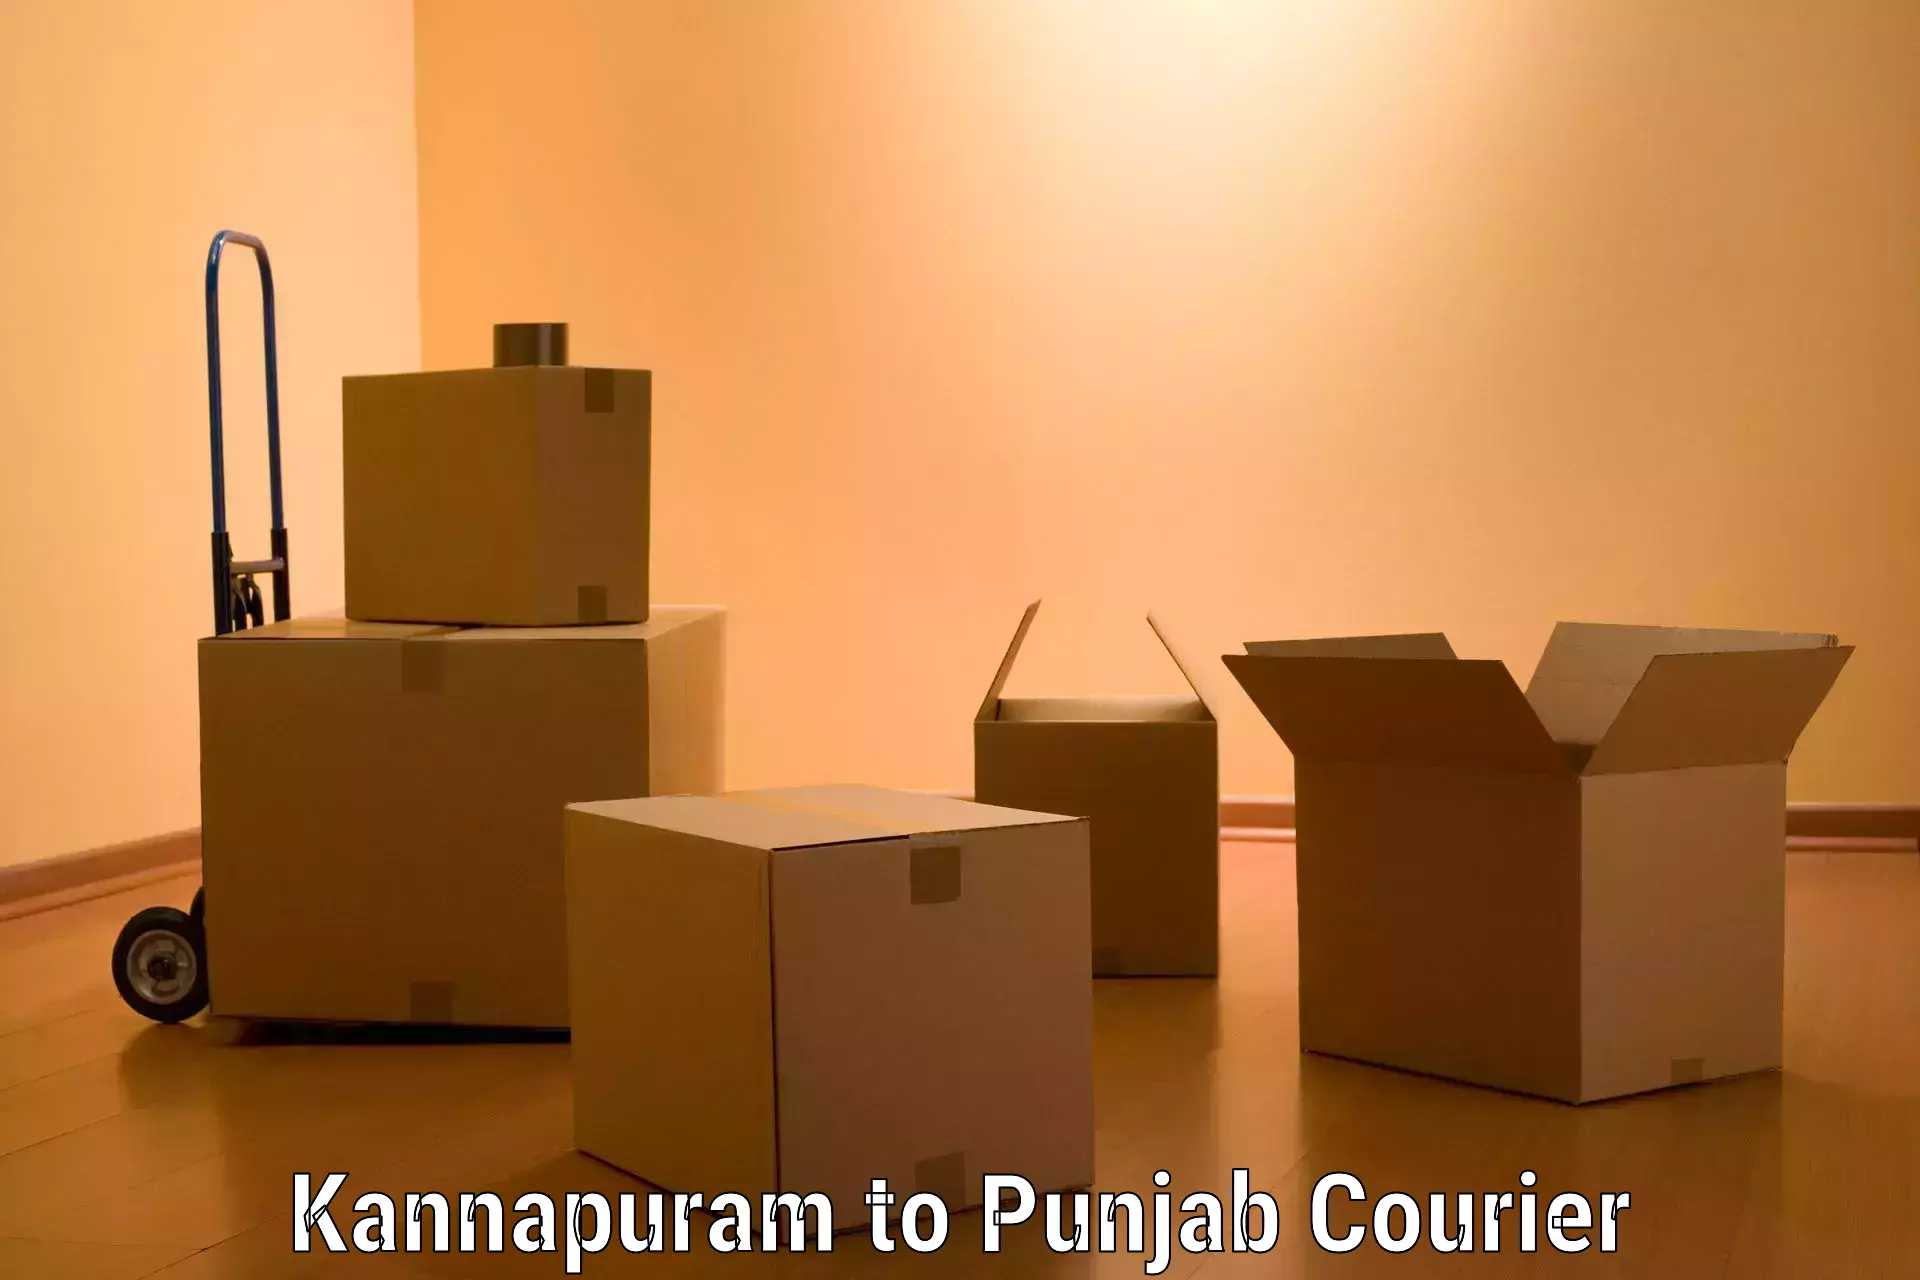 Moving and packing experts Kannapuram to Batala